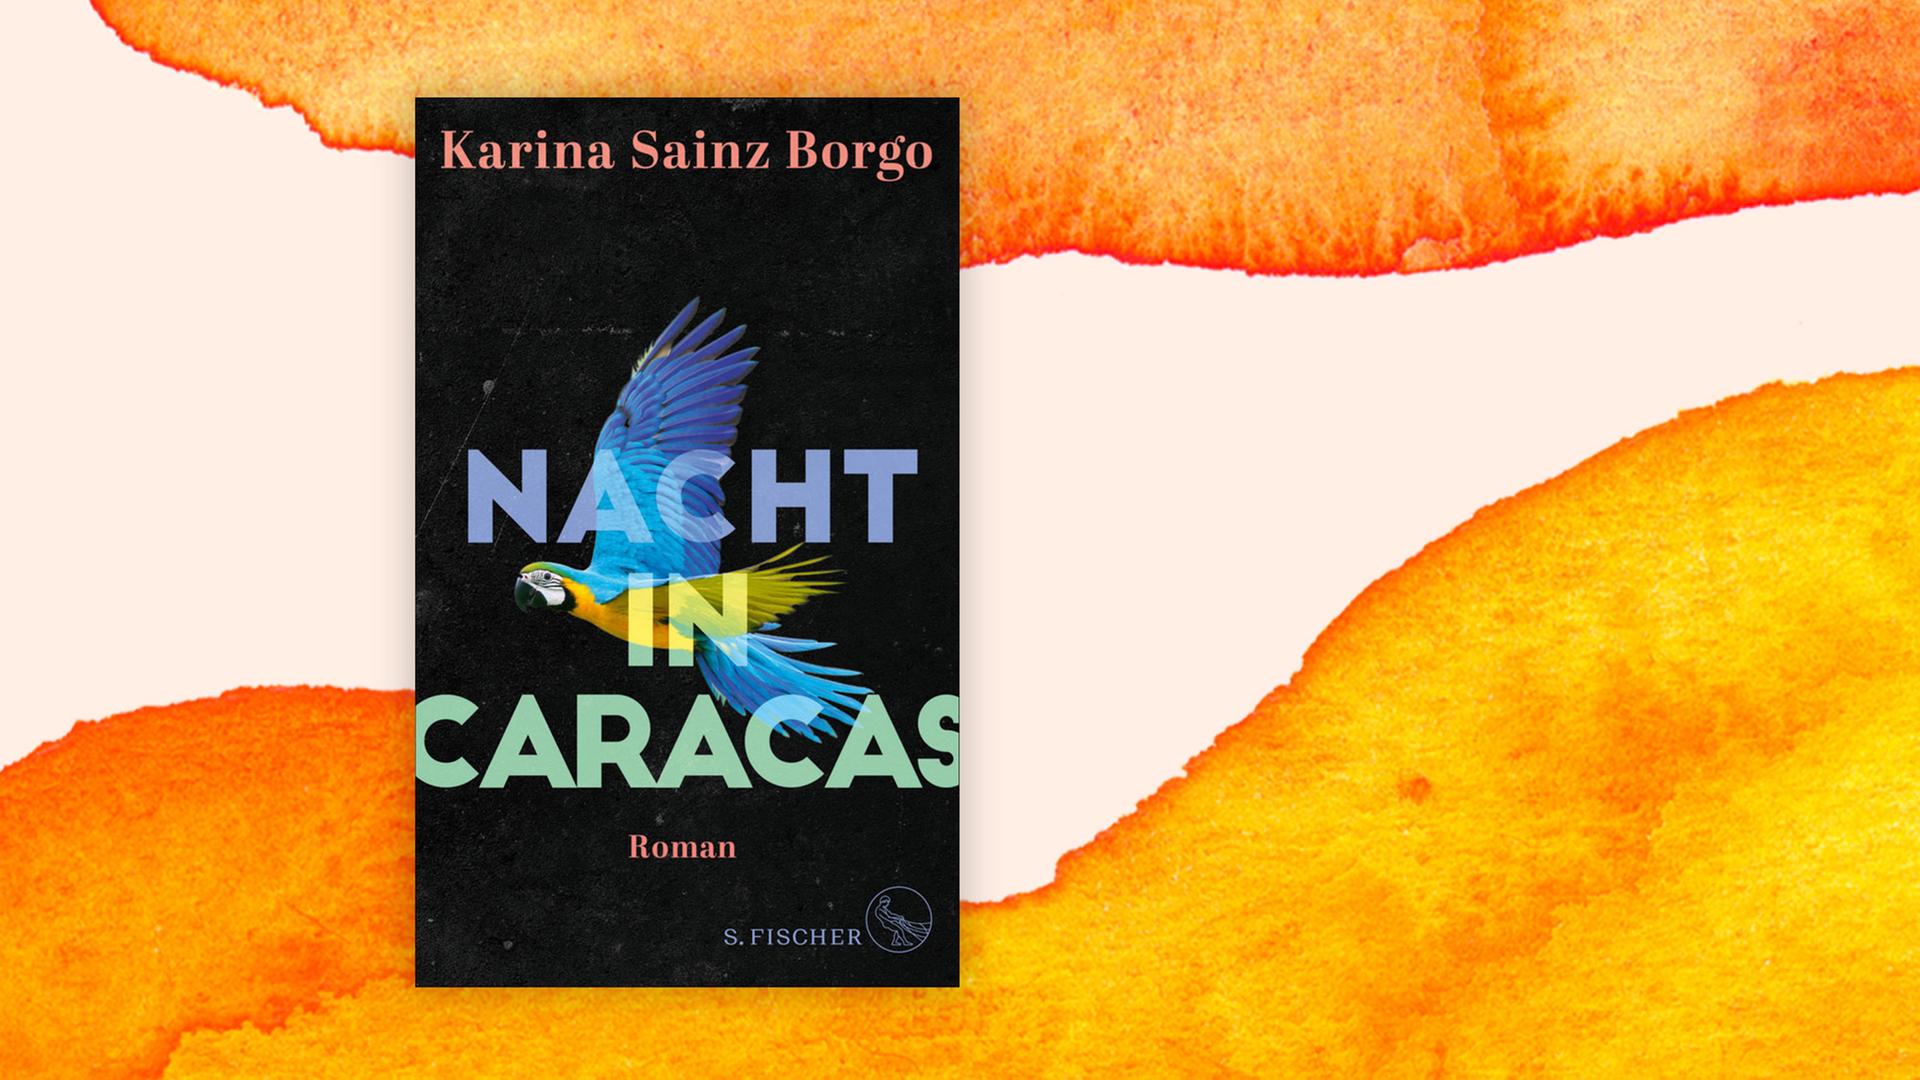 Das Bild zeigt das Cover des ersten Romans der venezolanischen Autorin Karina Sainz Borgo.